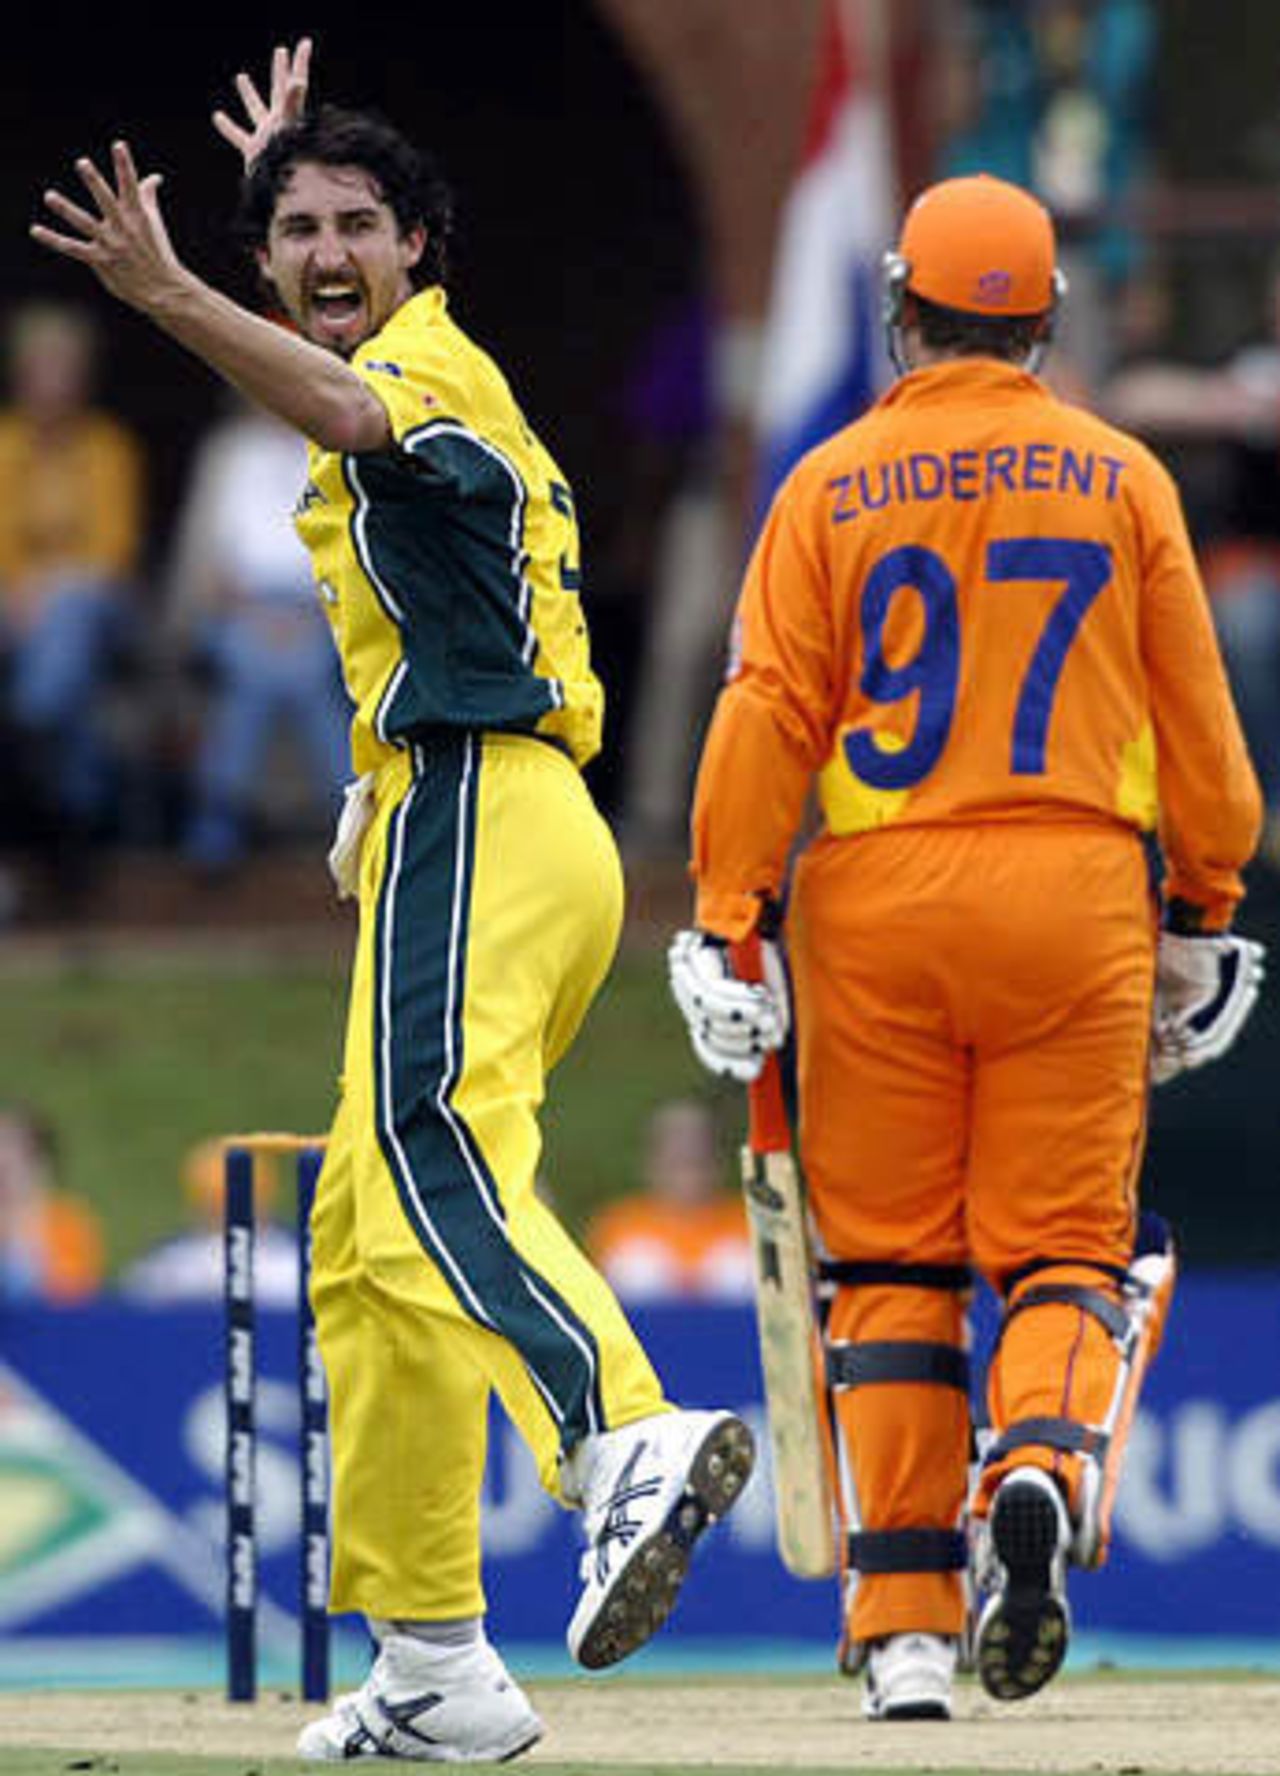 World Cup, 2003 - Australia v Netherlands at Potchefstroom, 20 February 2003